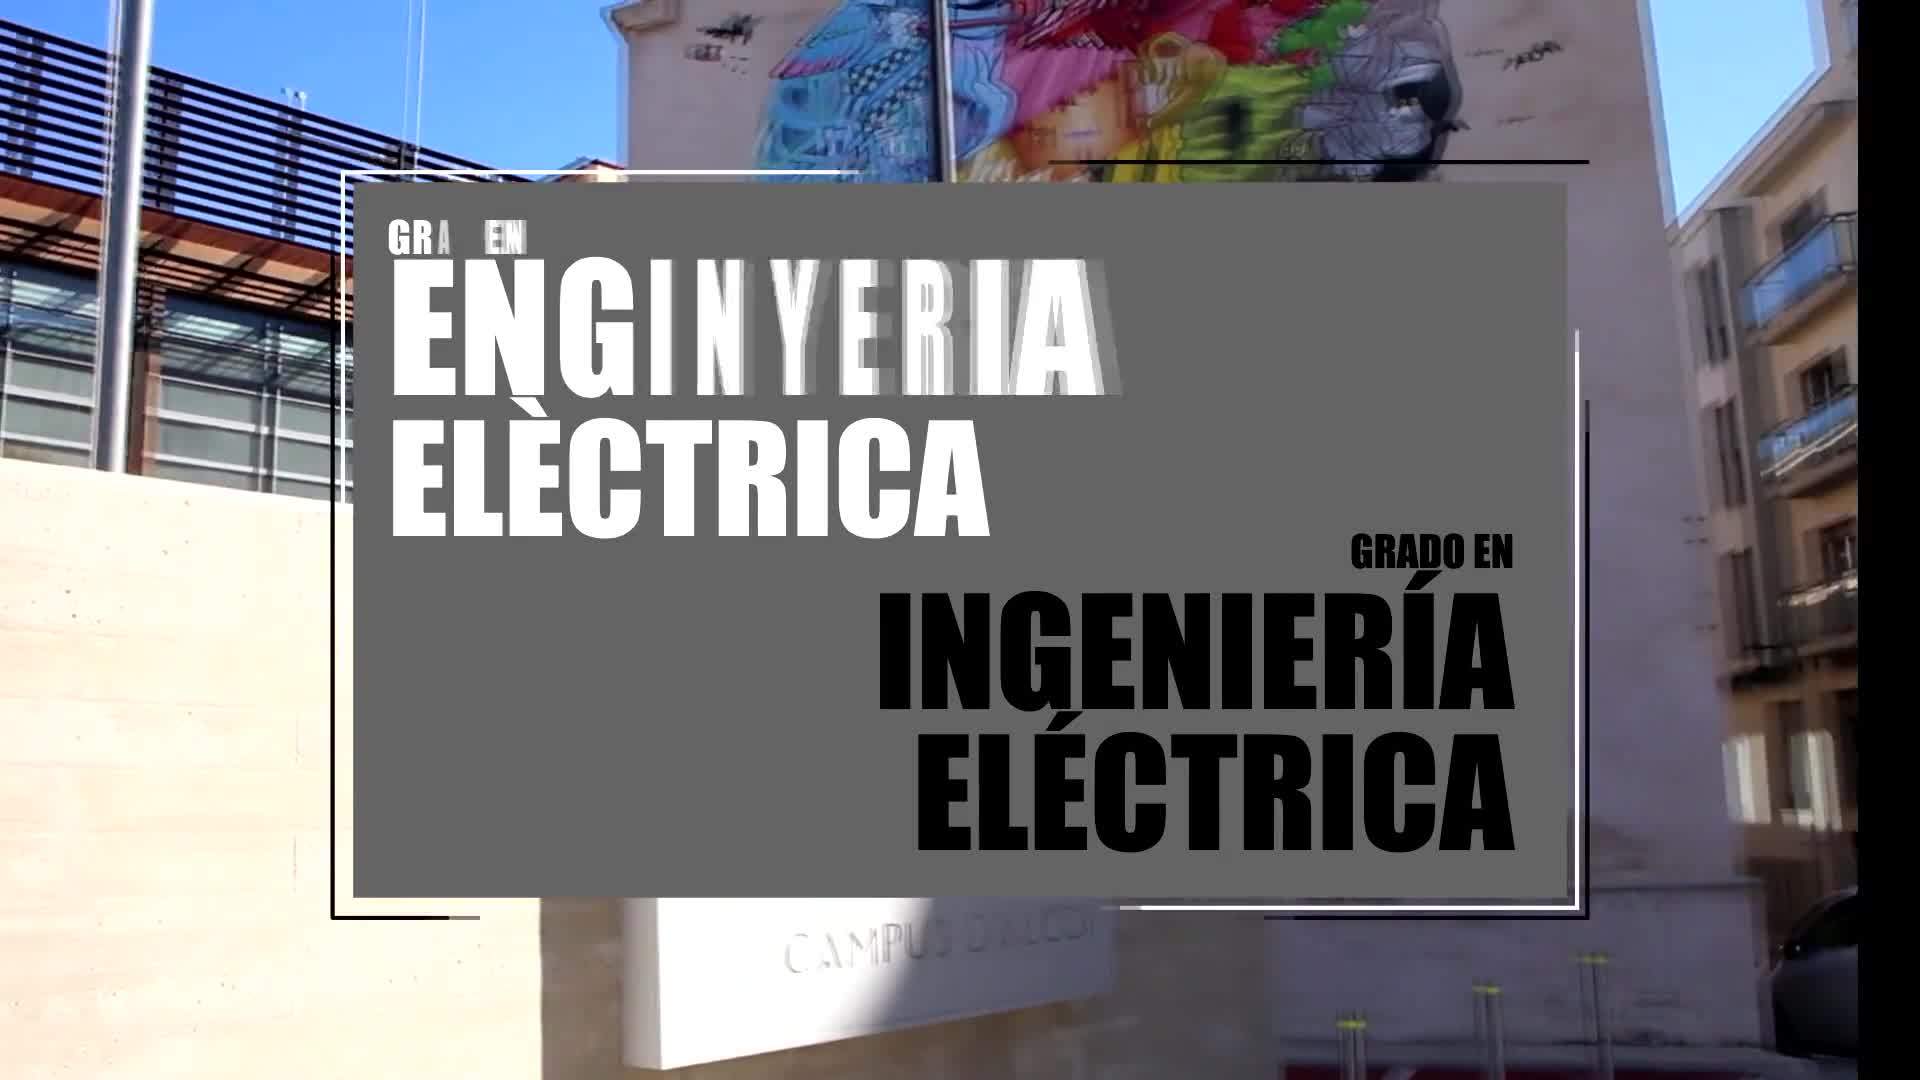 22-04-2020 Grado en Ingeniería Eléctrica (València y Alcoy)